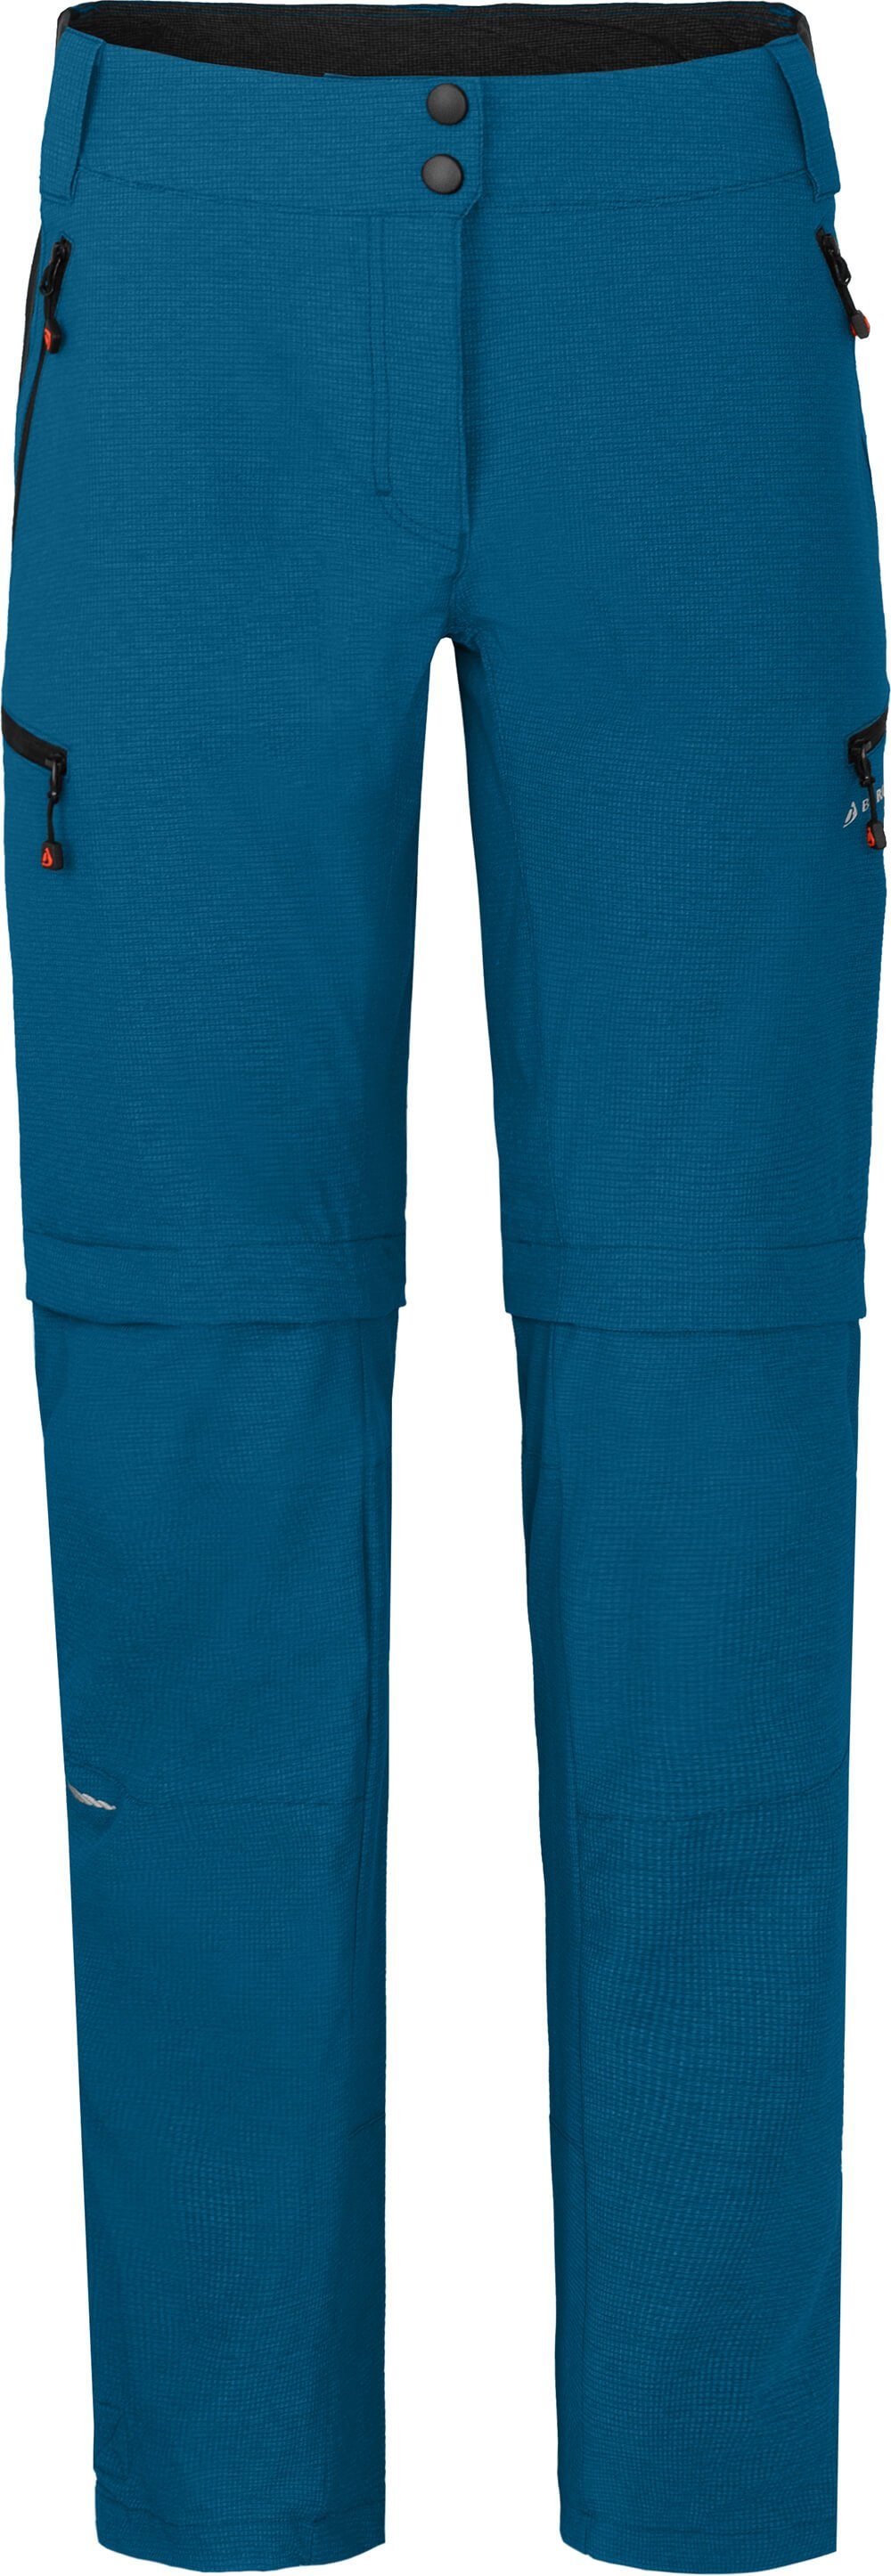 Bergson Zip-off-Hose »VALLI zip-off« Damen Radhose, robust elastisch,  Kurzgrößen, peacoat blau online kaufen | OTTO